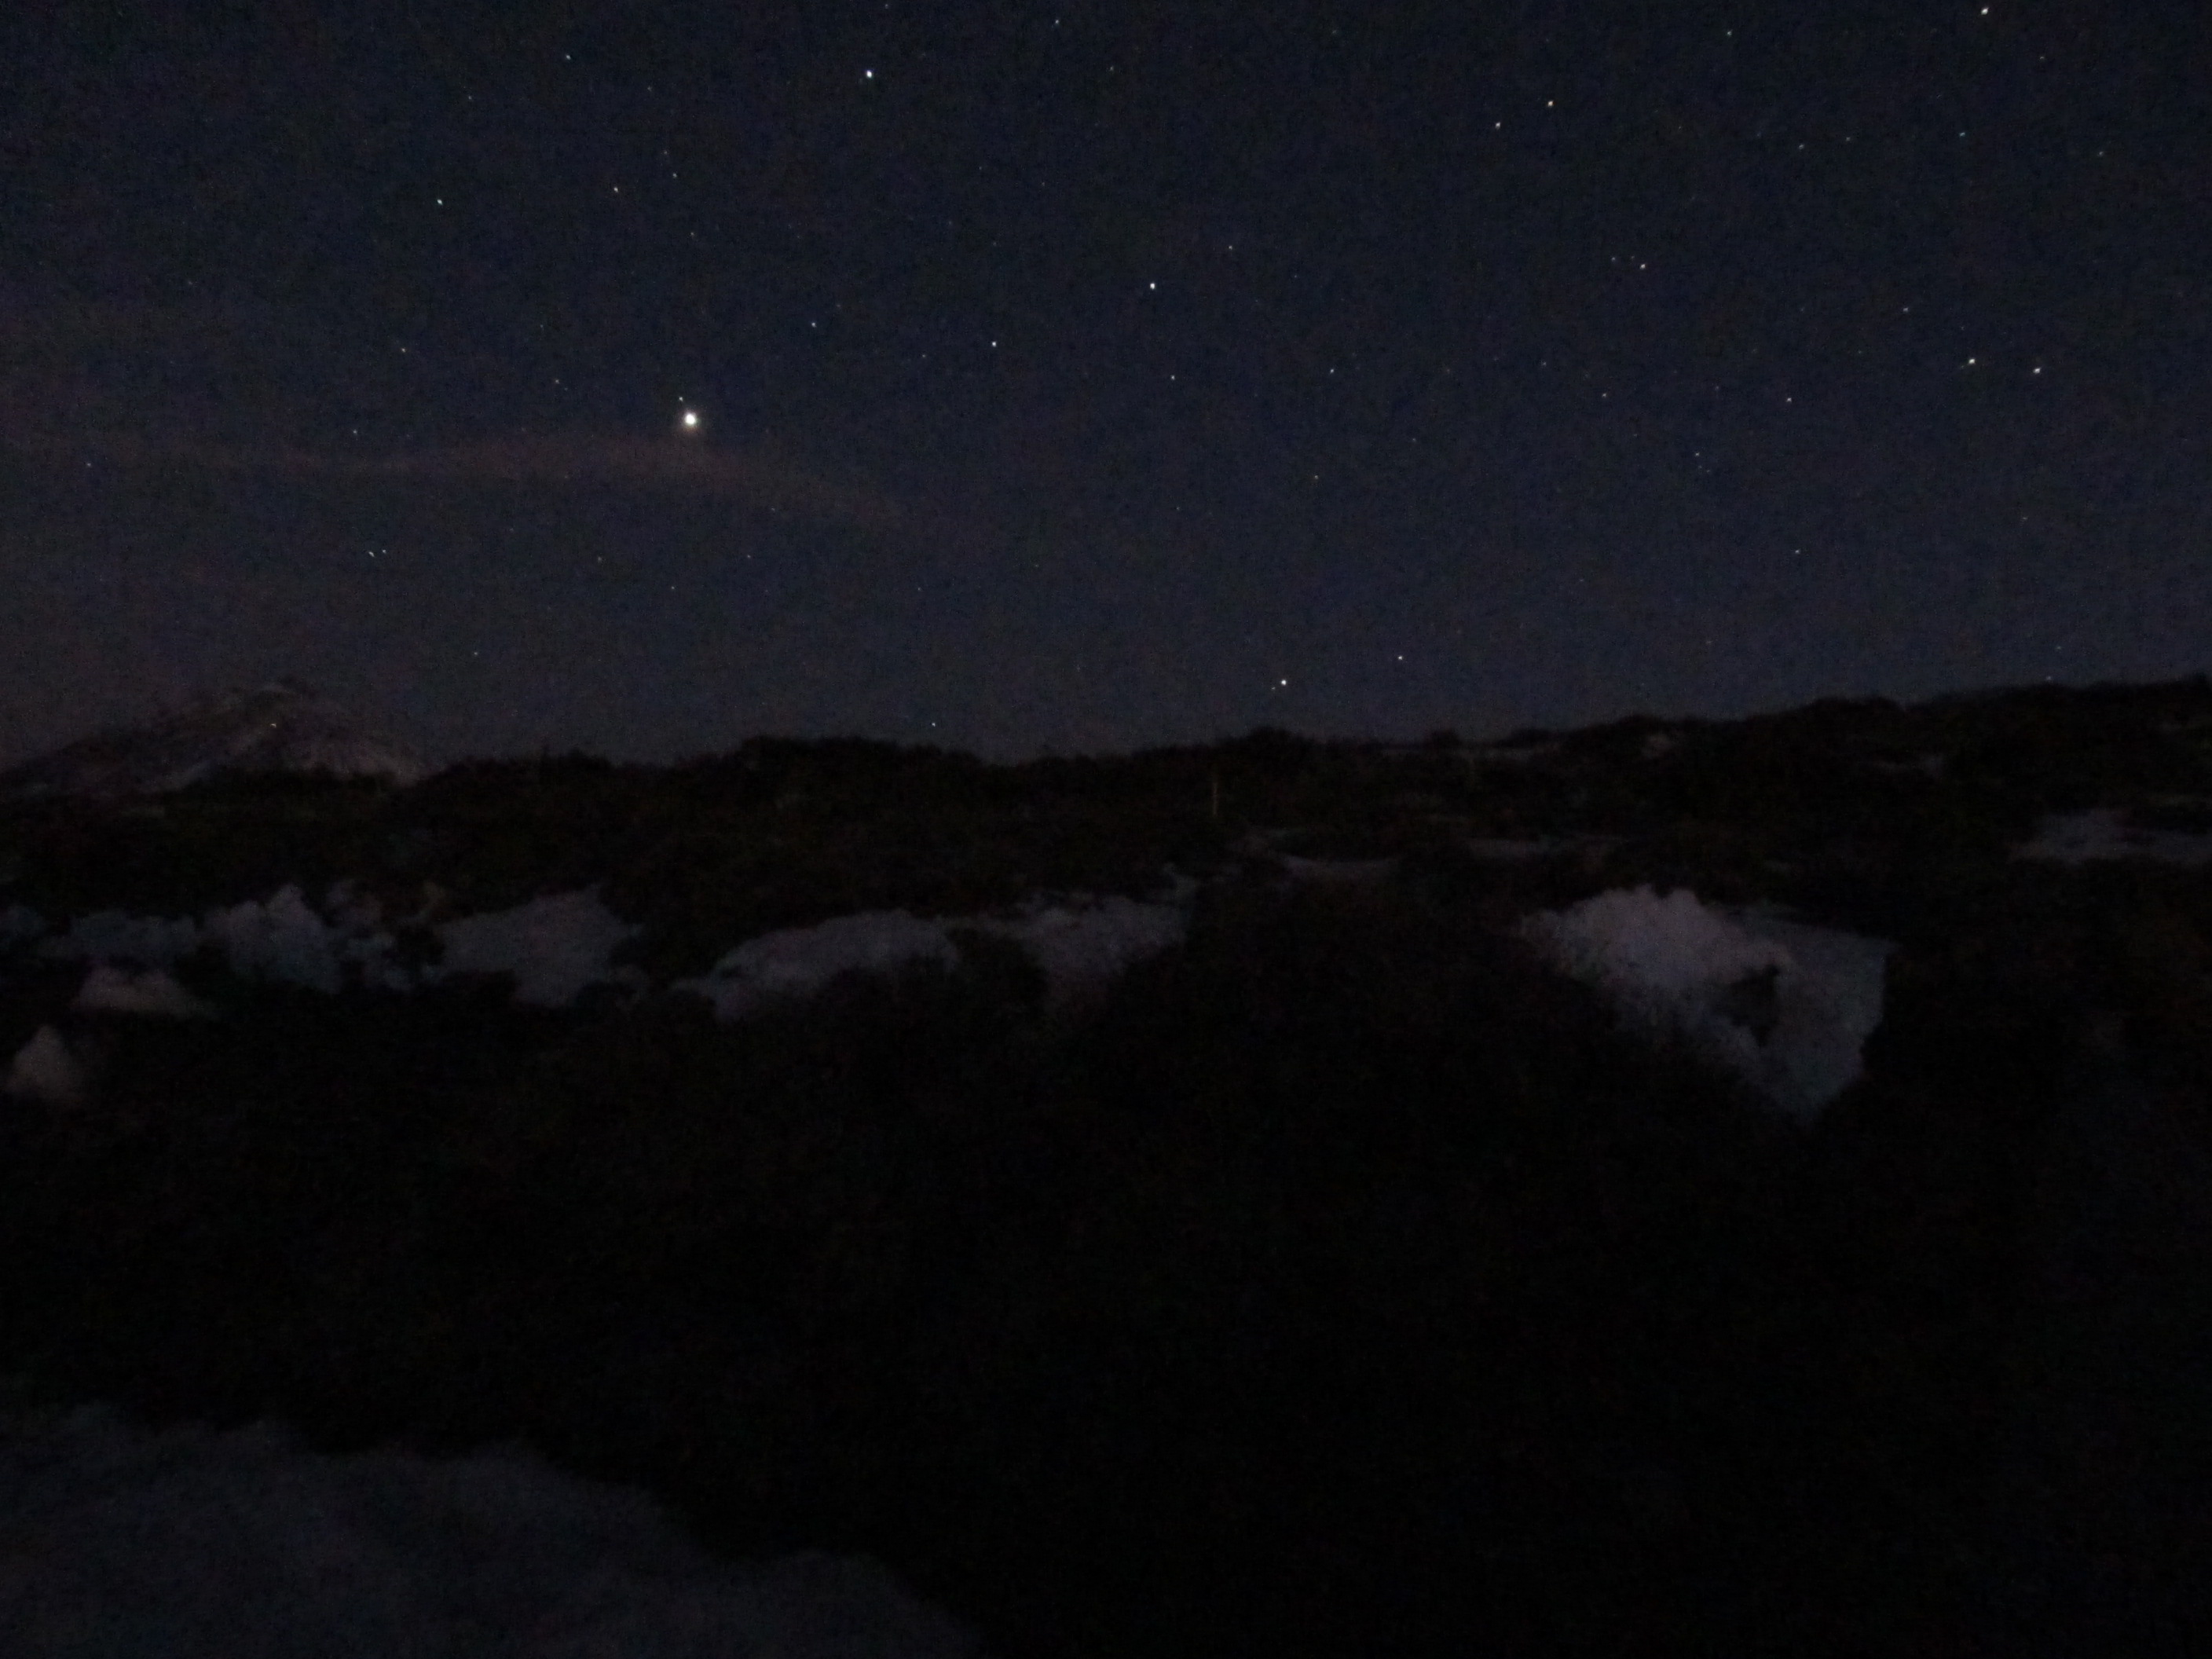 Jupiter set near the Teide volcano